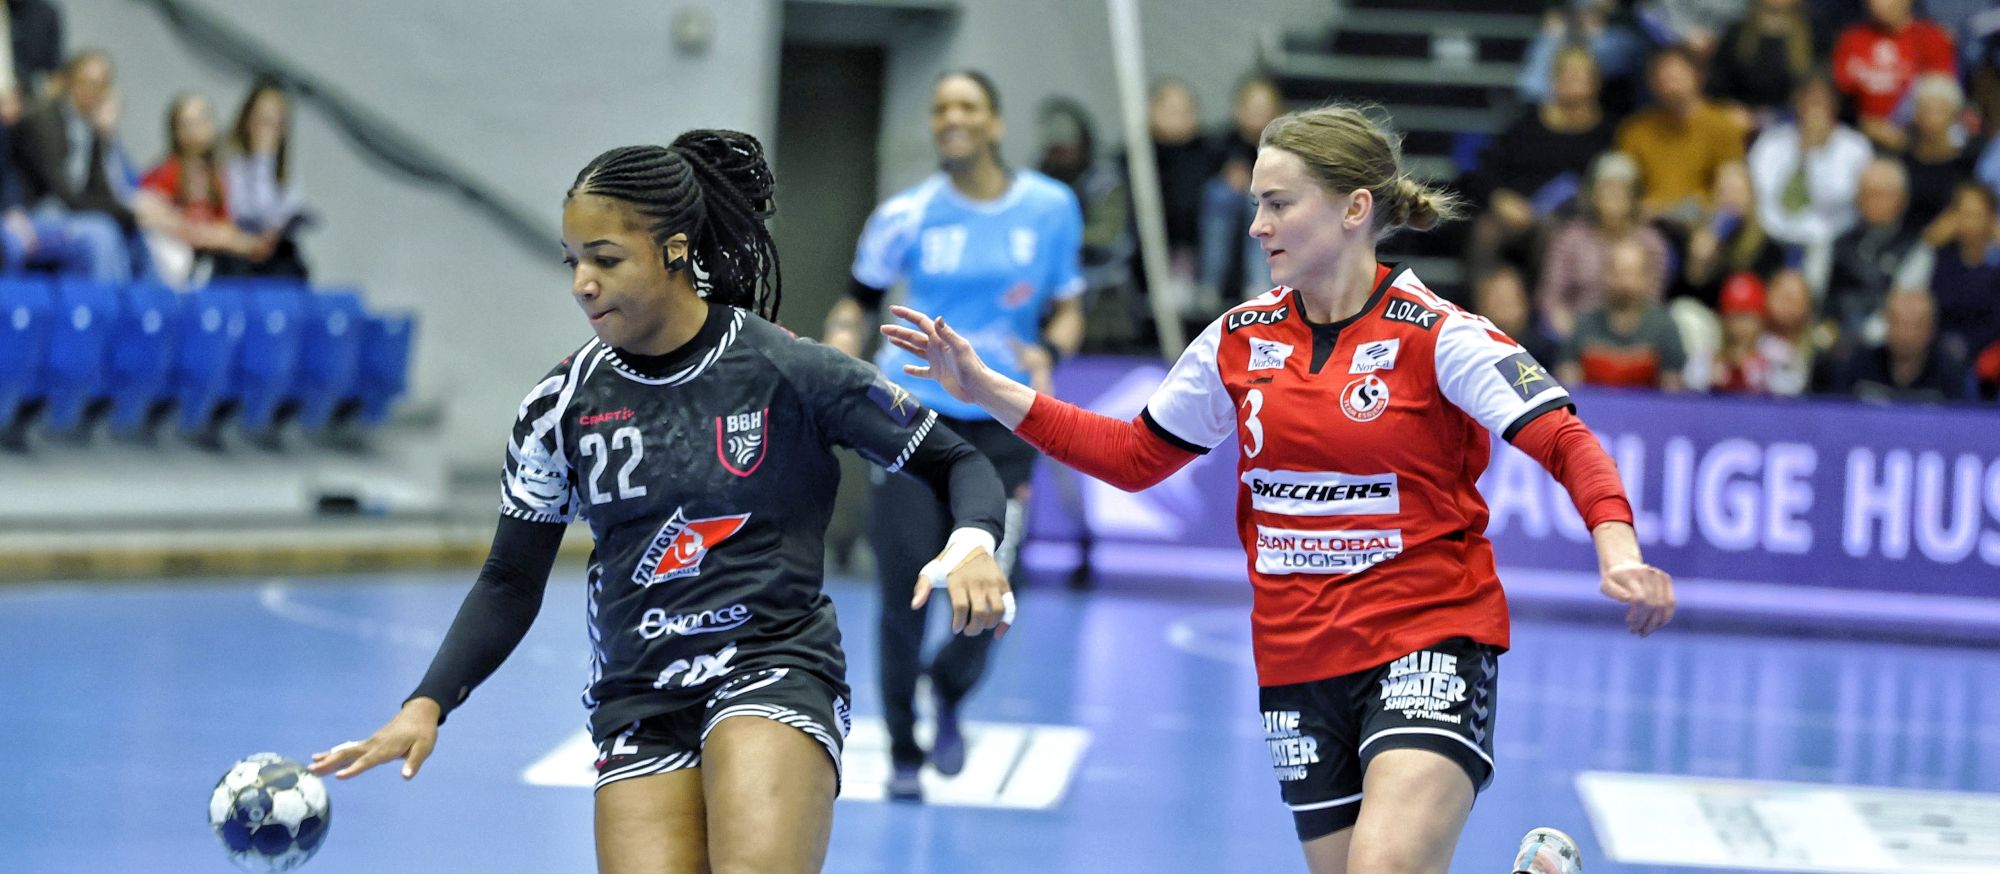 20230326 Team Esbjerg Brest Bretagne Handball 22 Quote